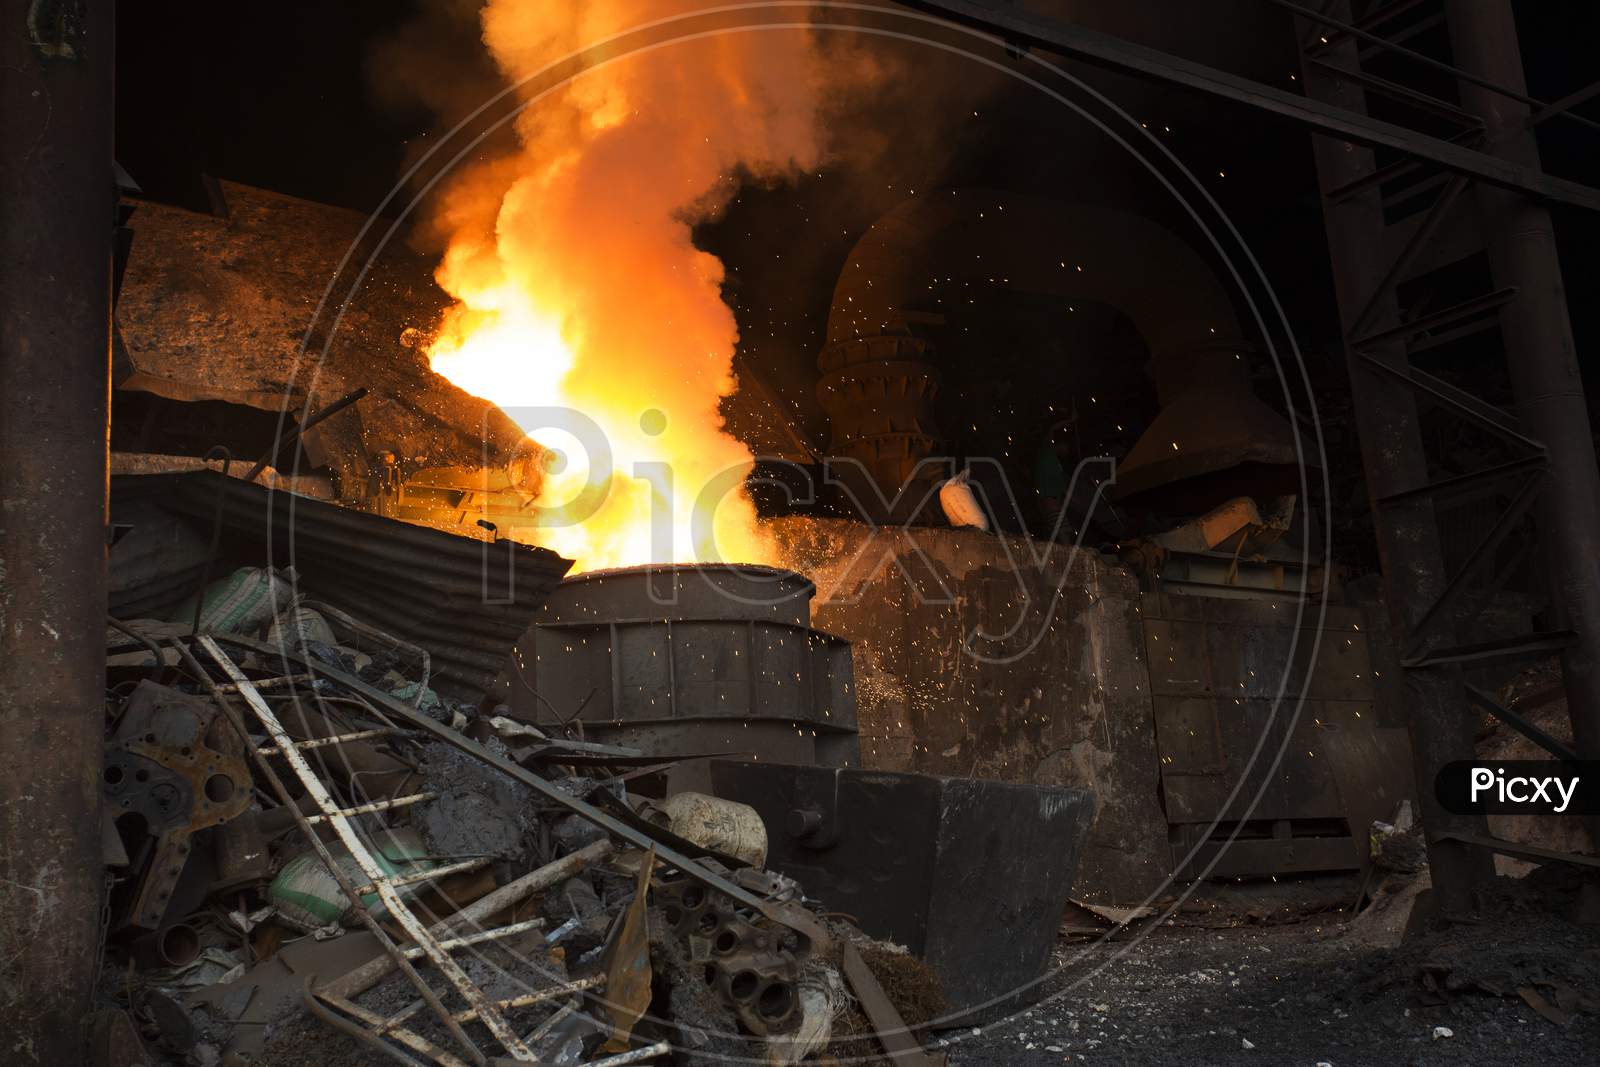 Blast Furnace In The Melt Steel Works In Demra, Dhaka, Bangladesh.